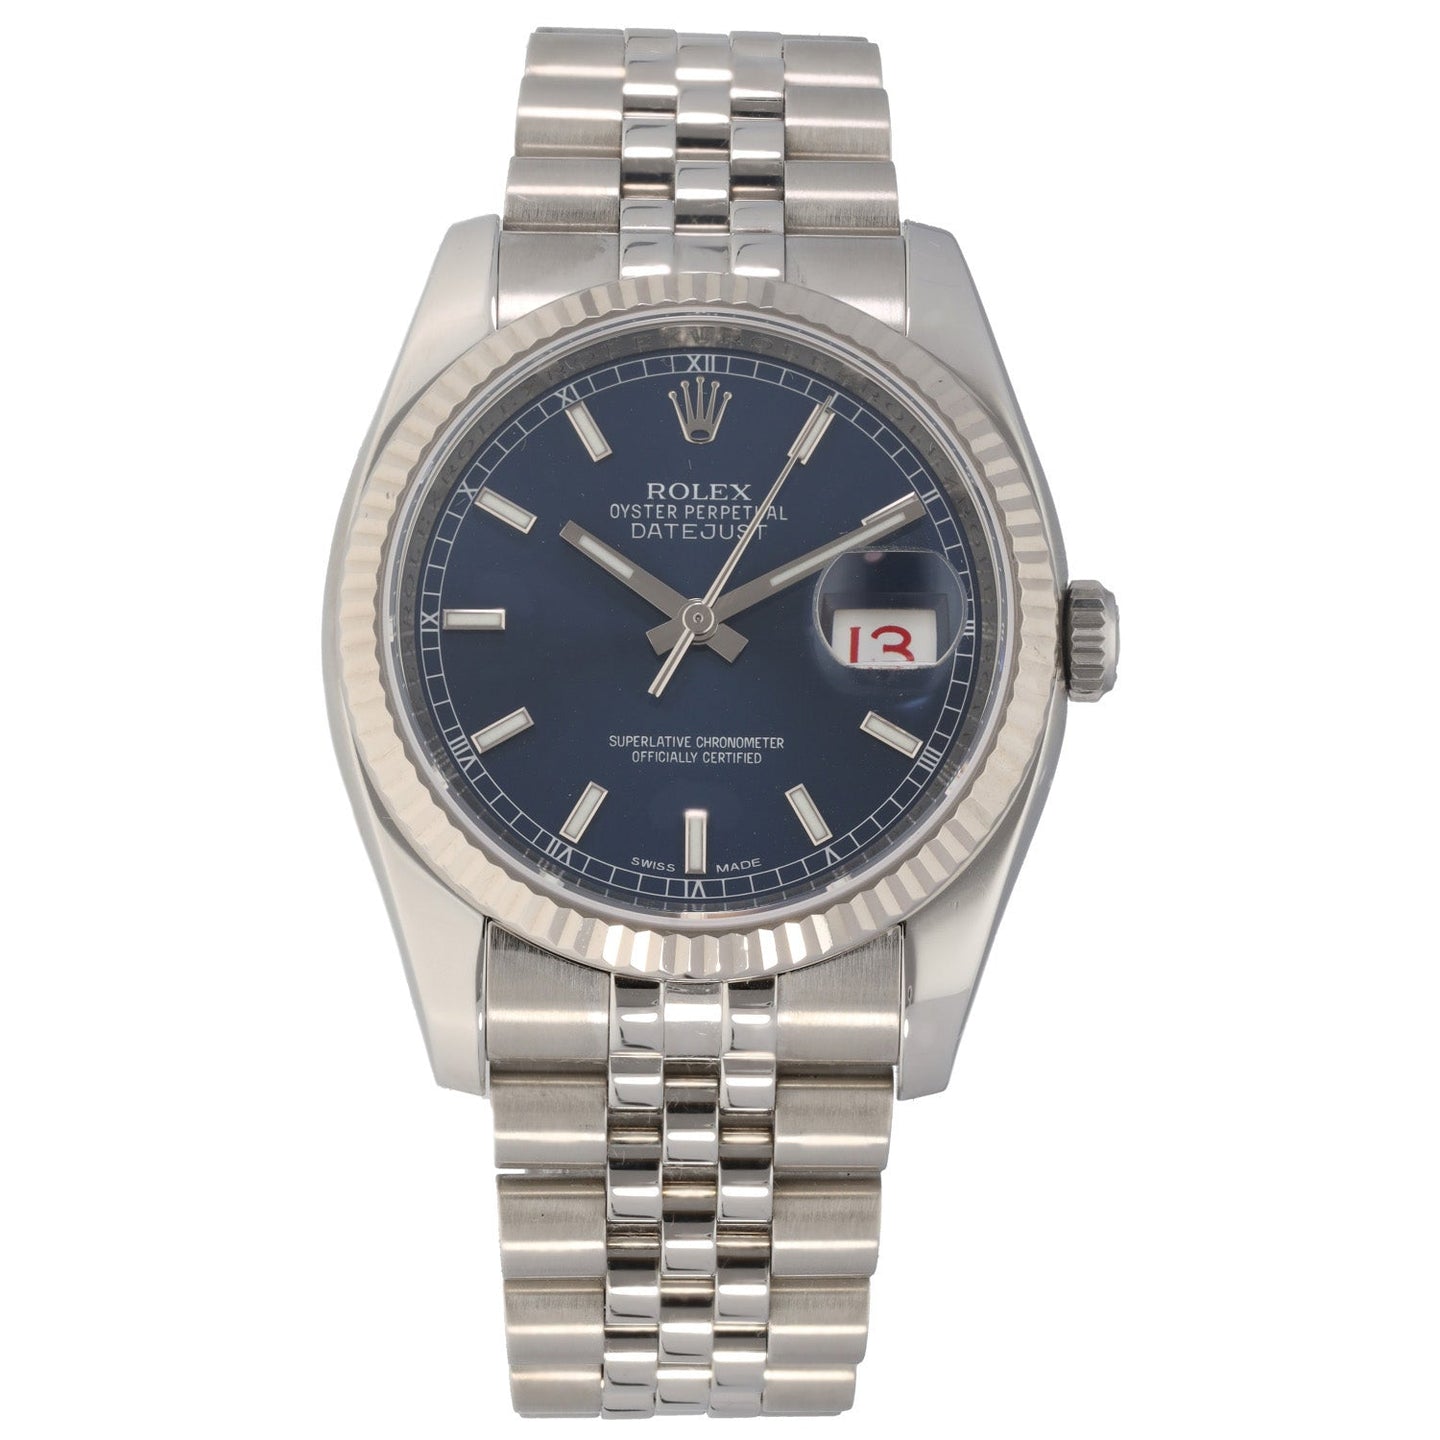 Rolex Datejust 116234 36mm Stainless Steel Watch